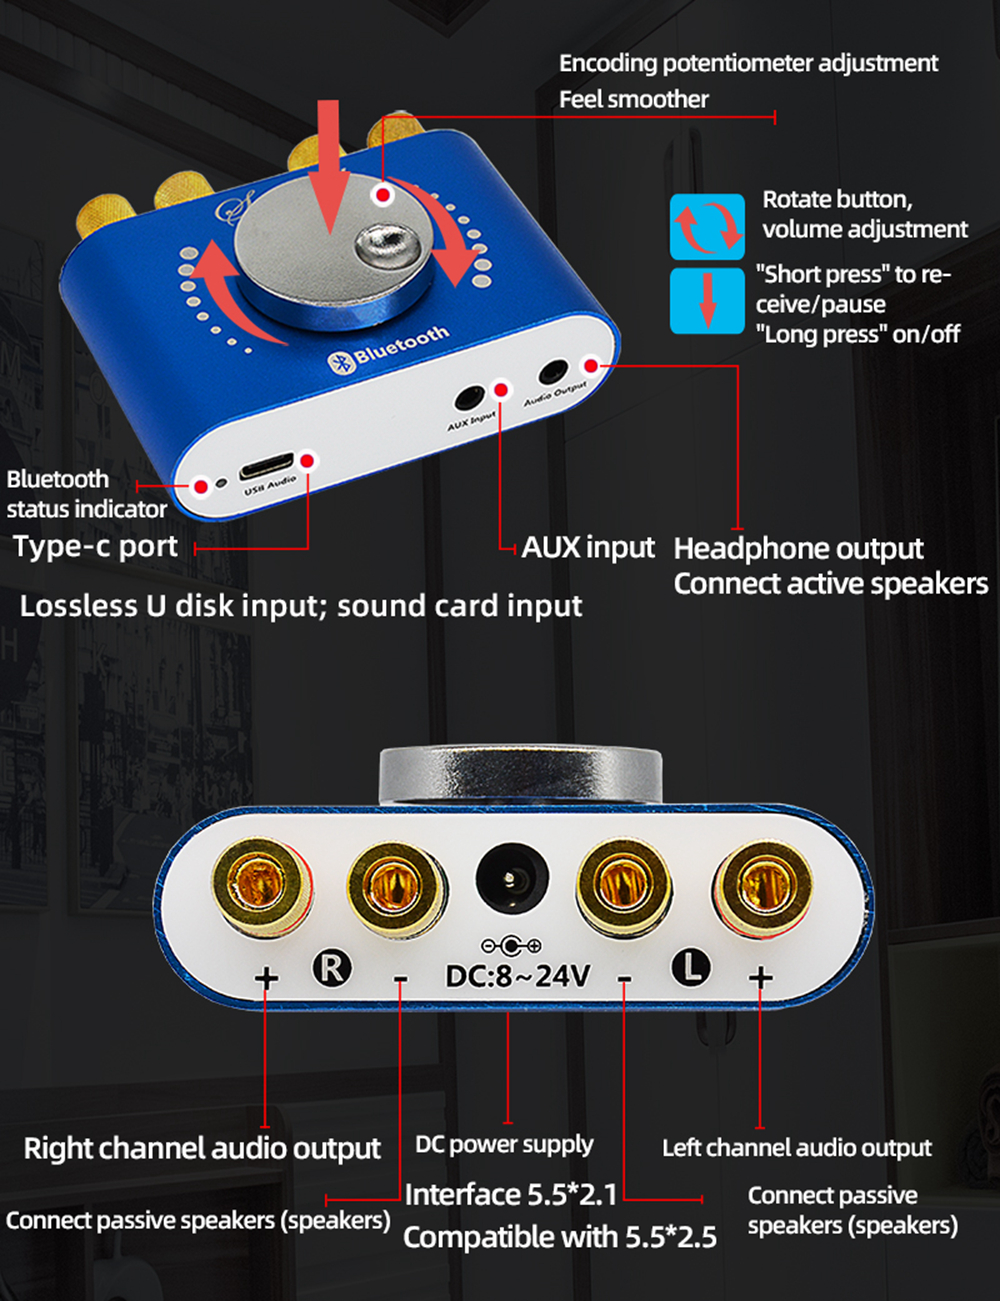 XY-KA50L-50W50W-Stereo-bluetooth-50-AUX-U-Disk-USB-Power-Amplifier-Board--Speaker-Audio-Amplifier-Su-1766660